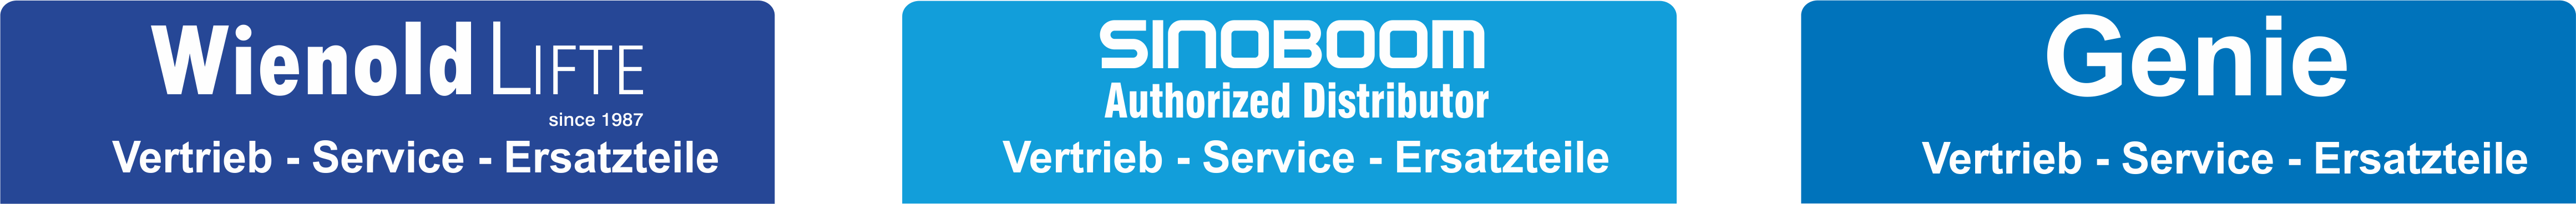 Sinoboom logos mit Wienold